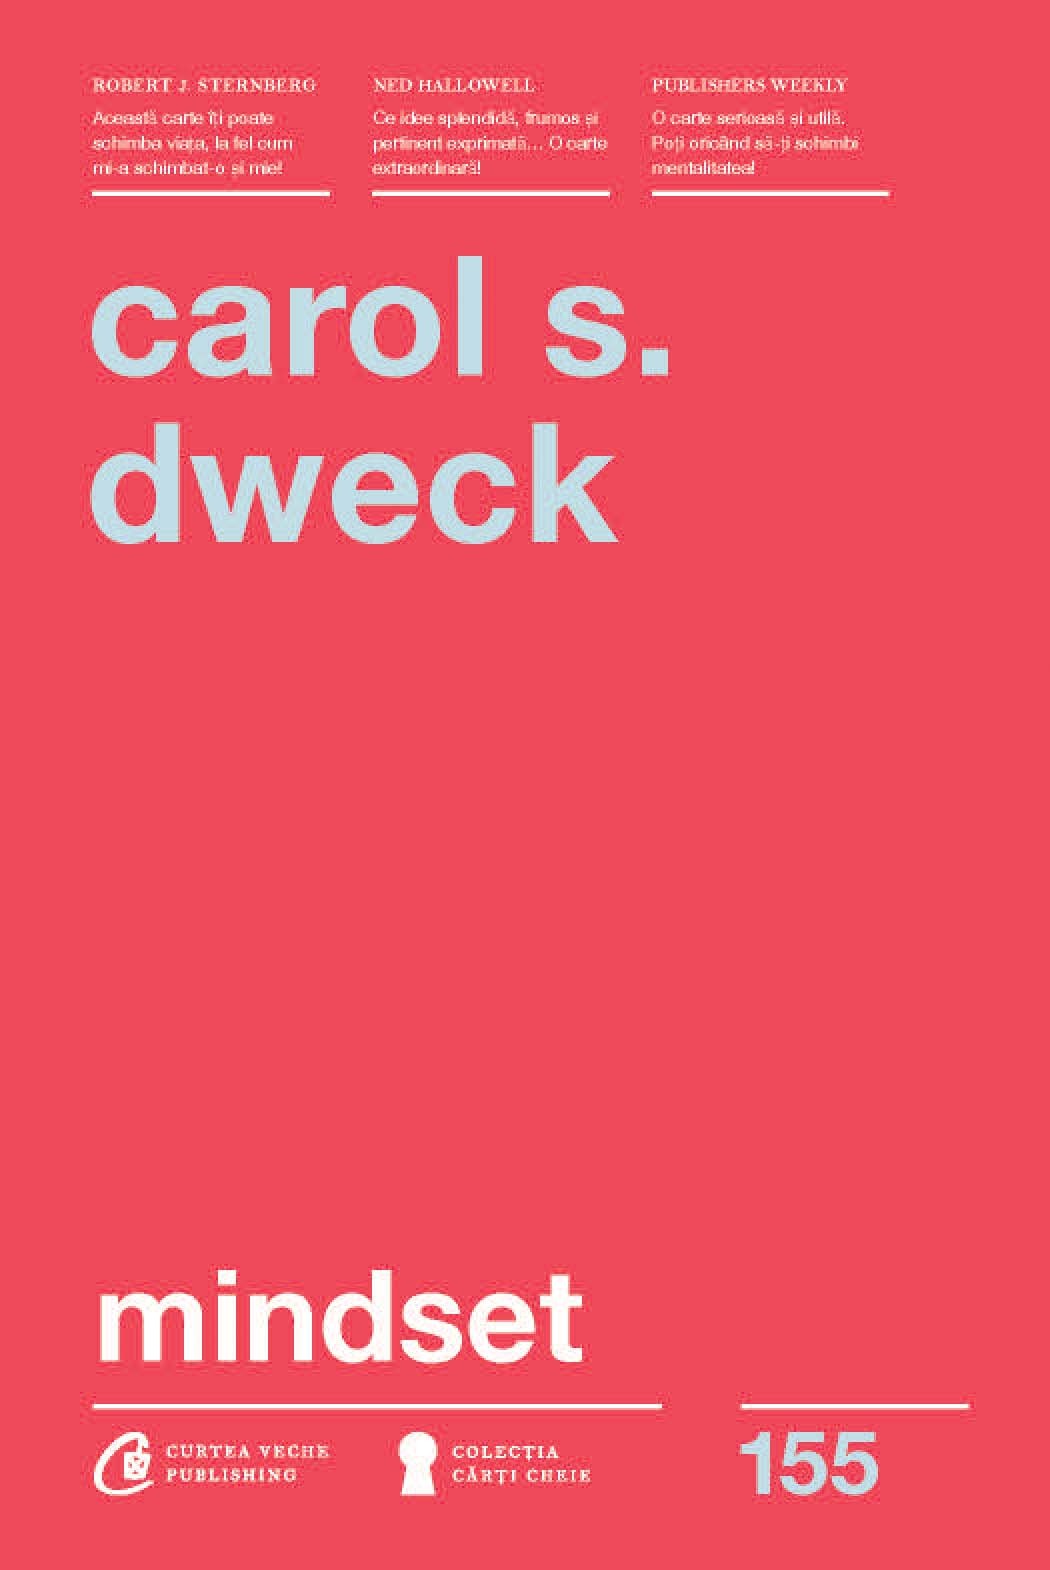 Mindset | Carol S. Dweck